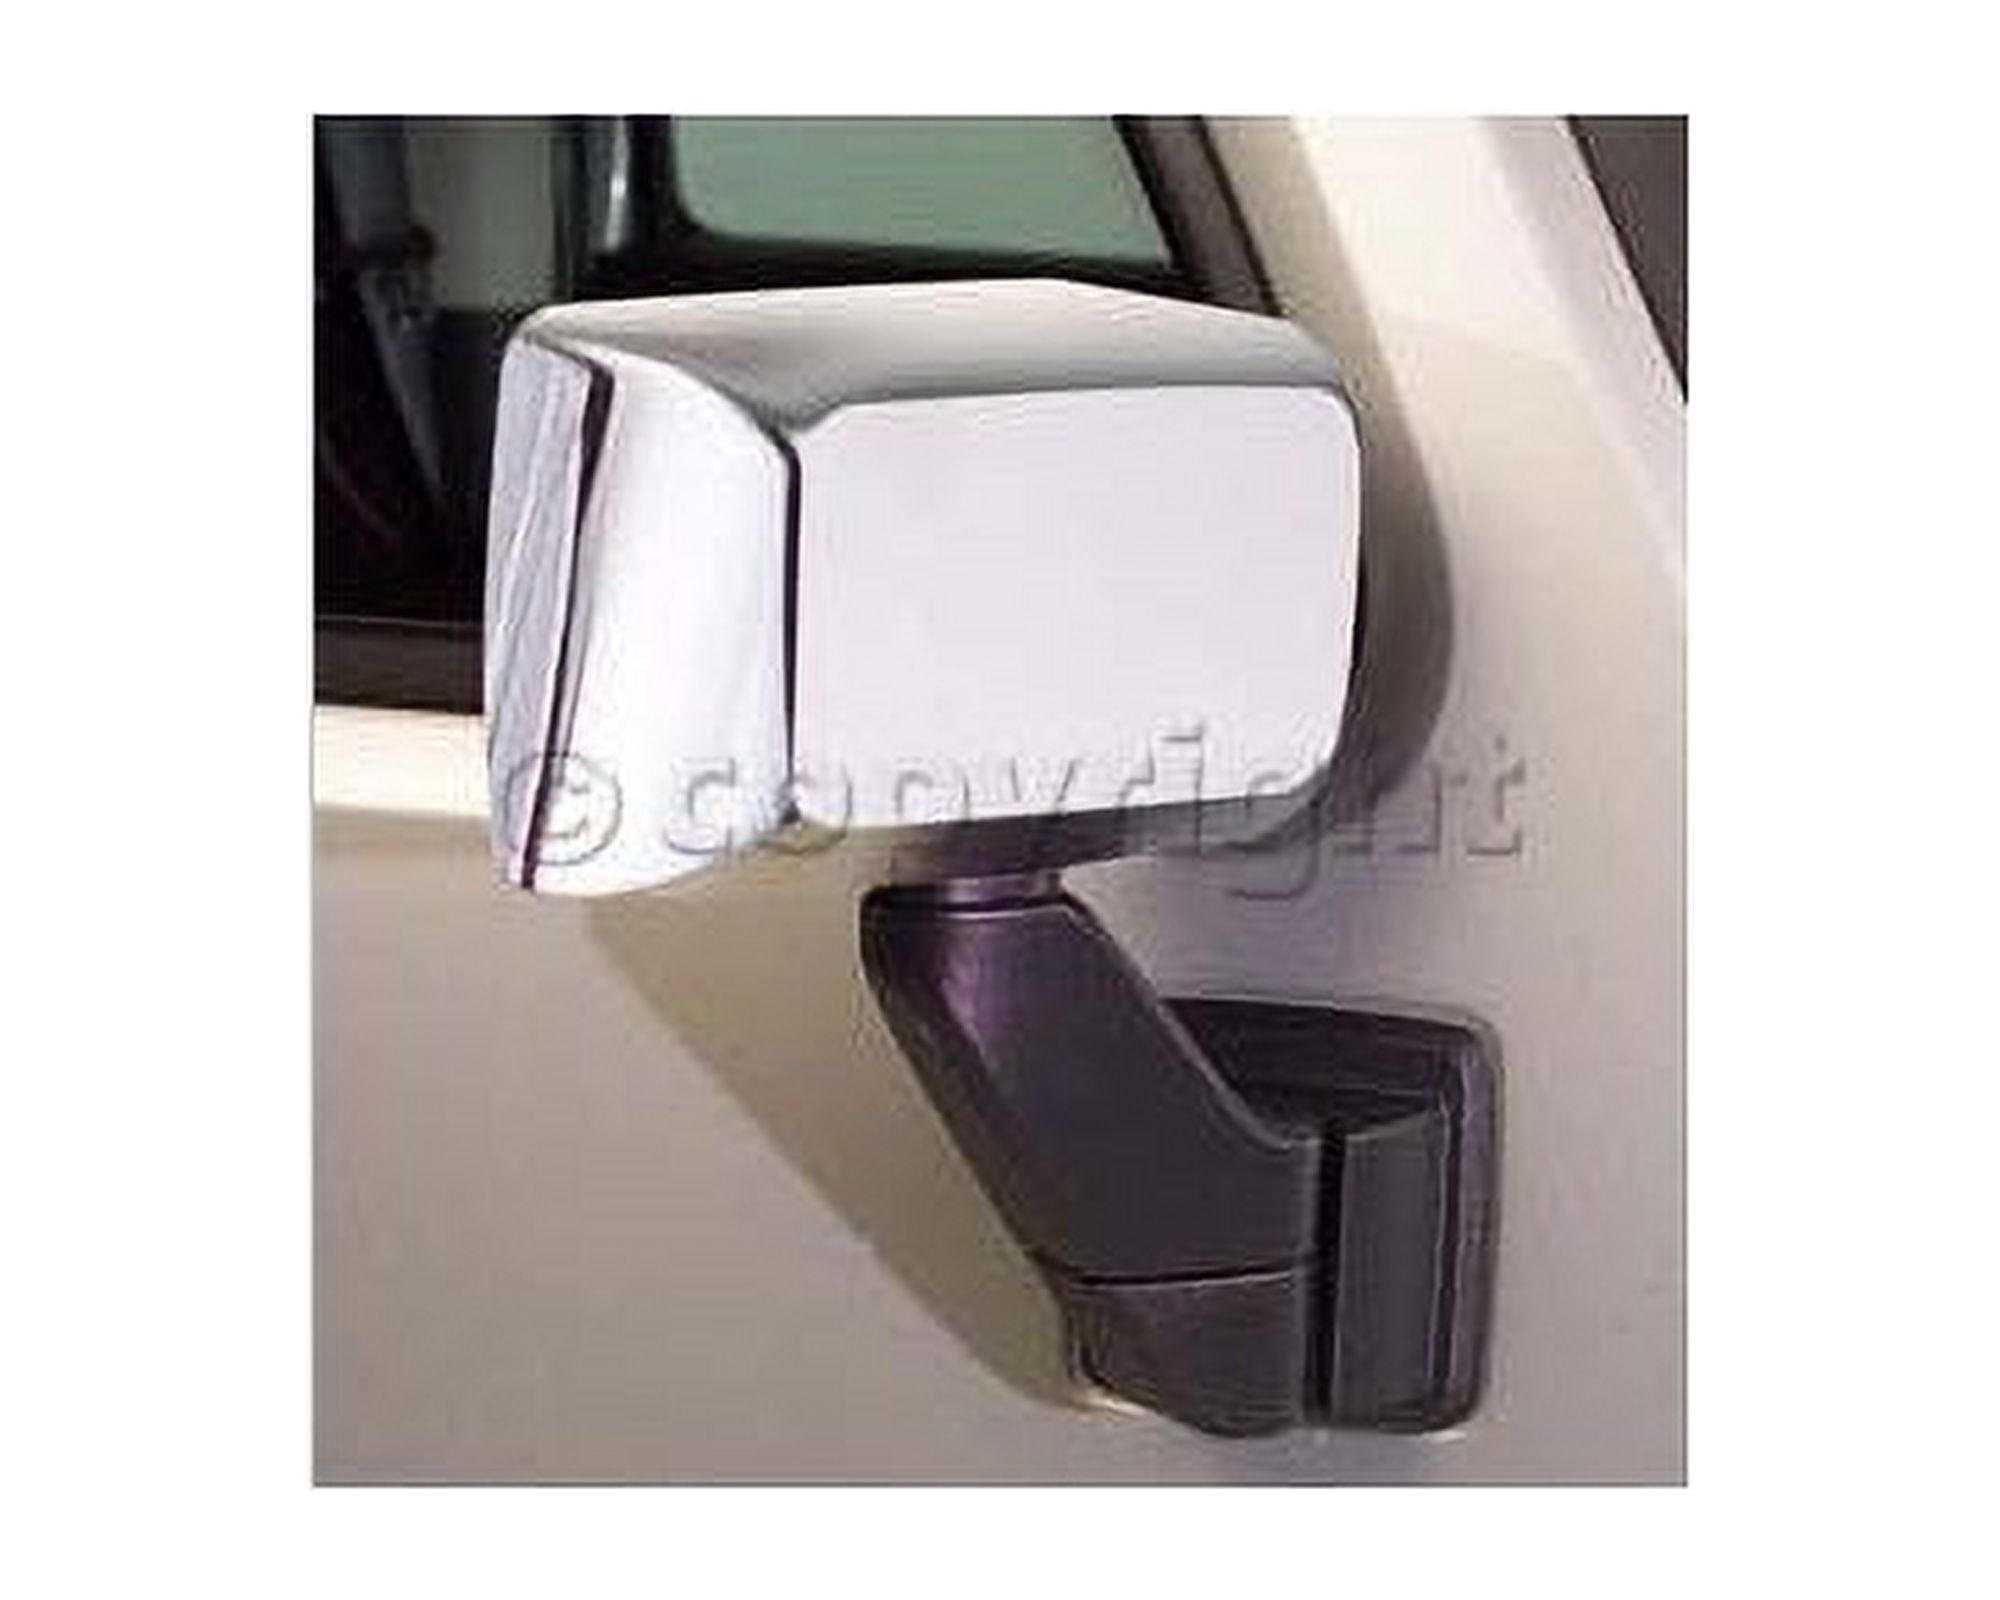 Putco 408401 Mirror Cover For Hyundai Elantra, Chrome 